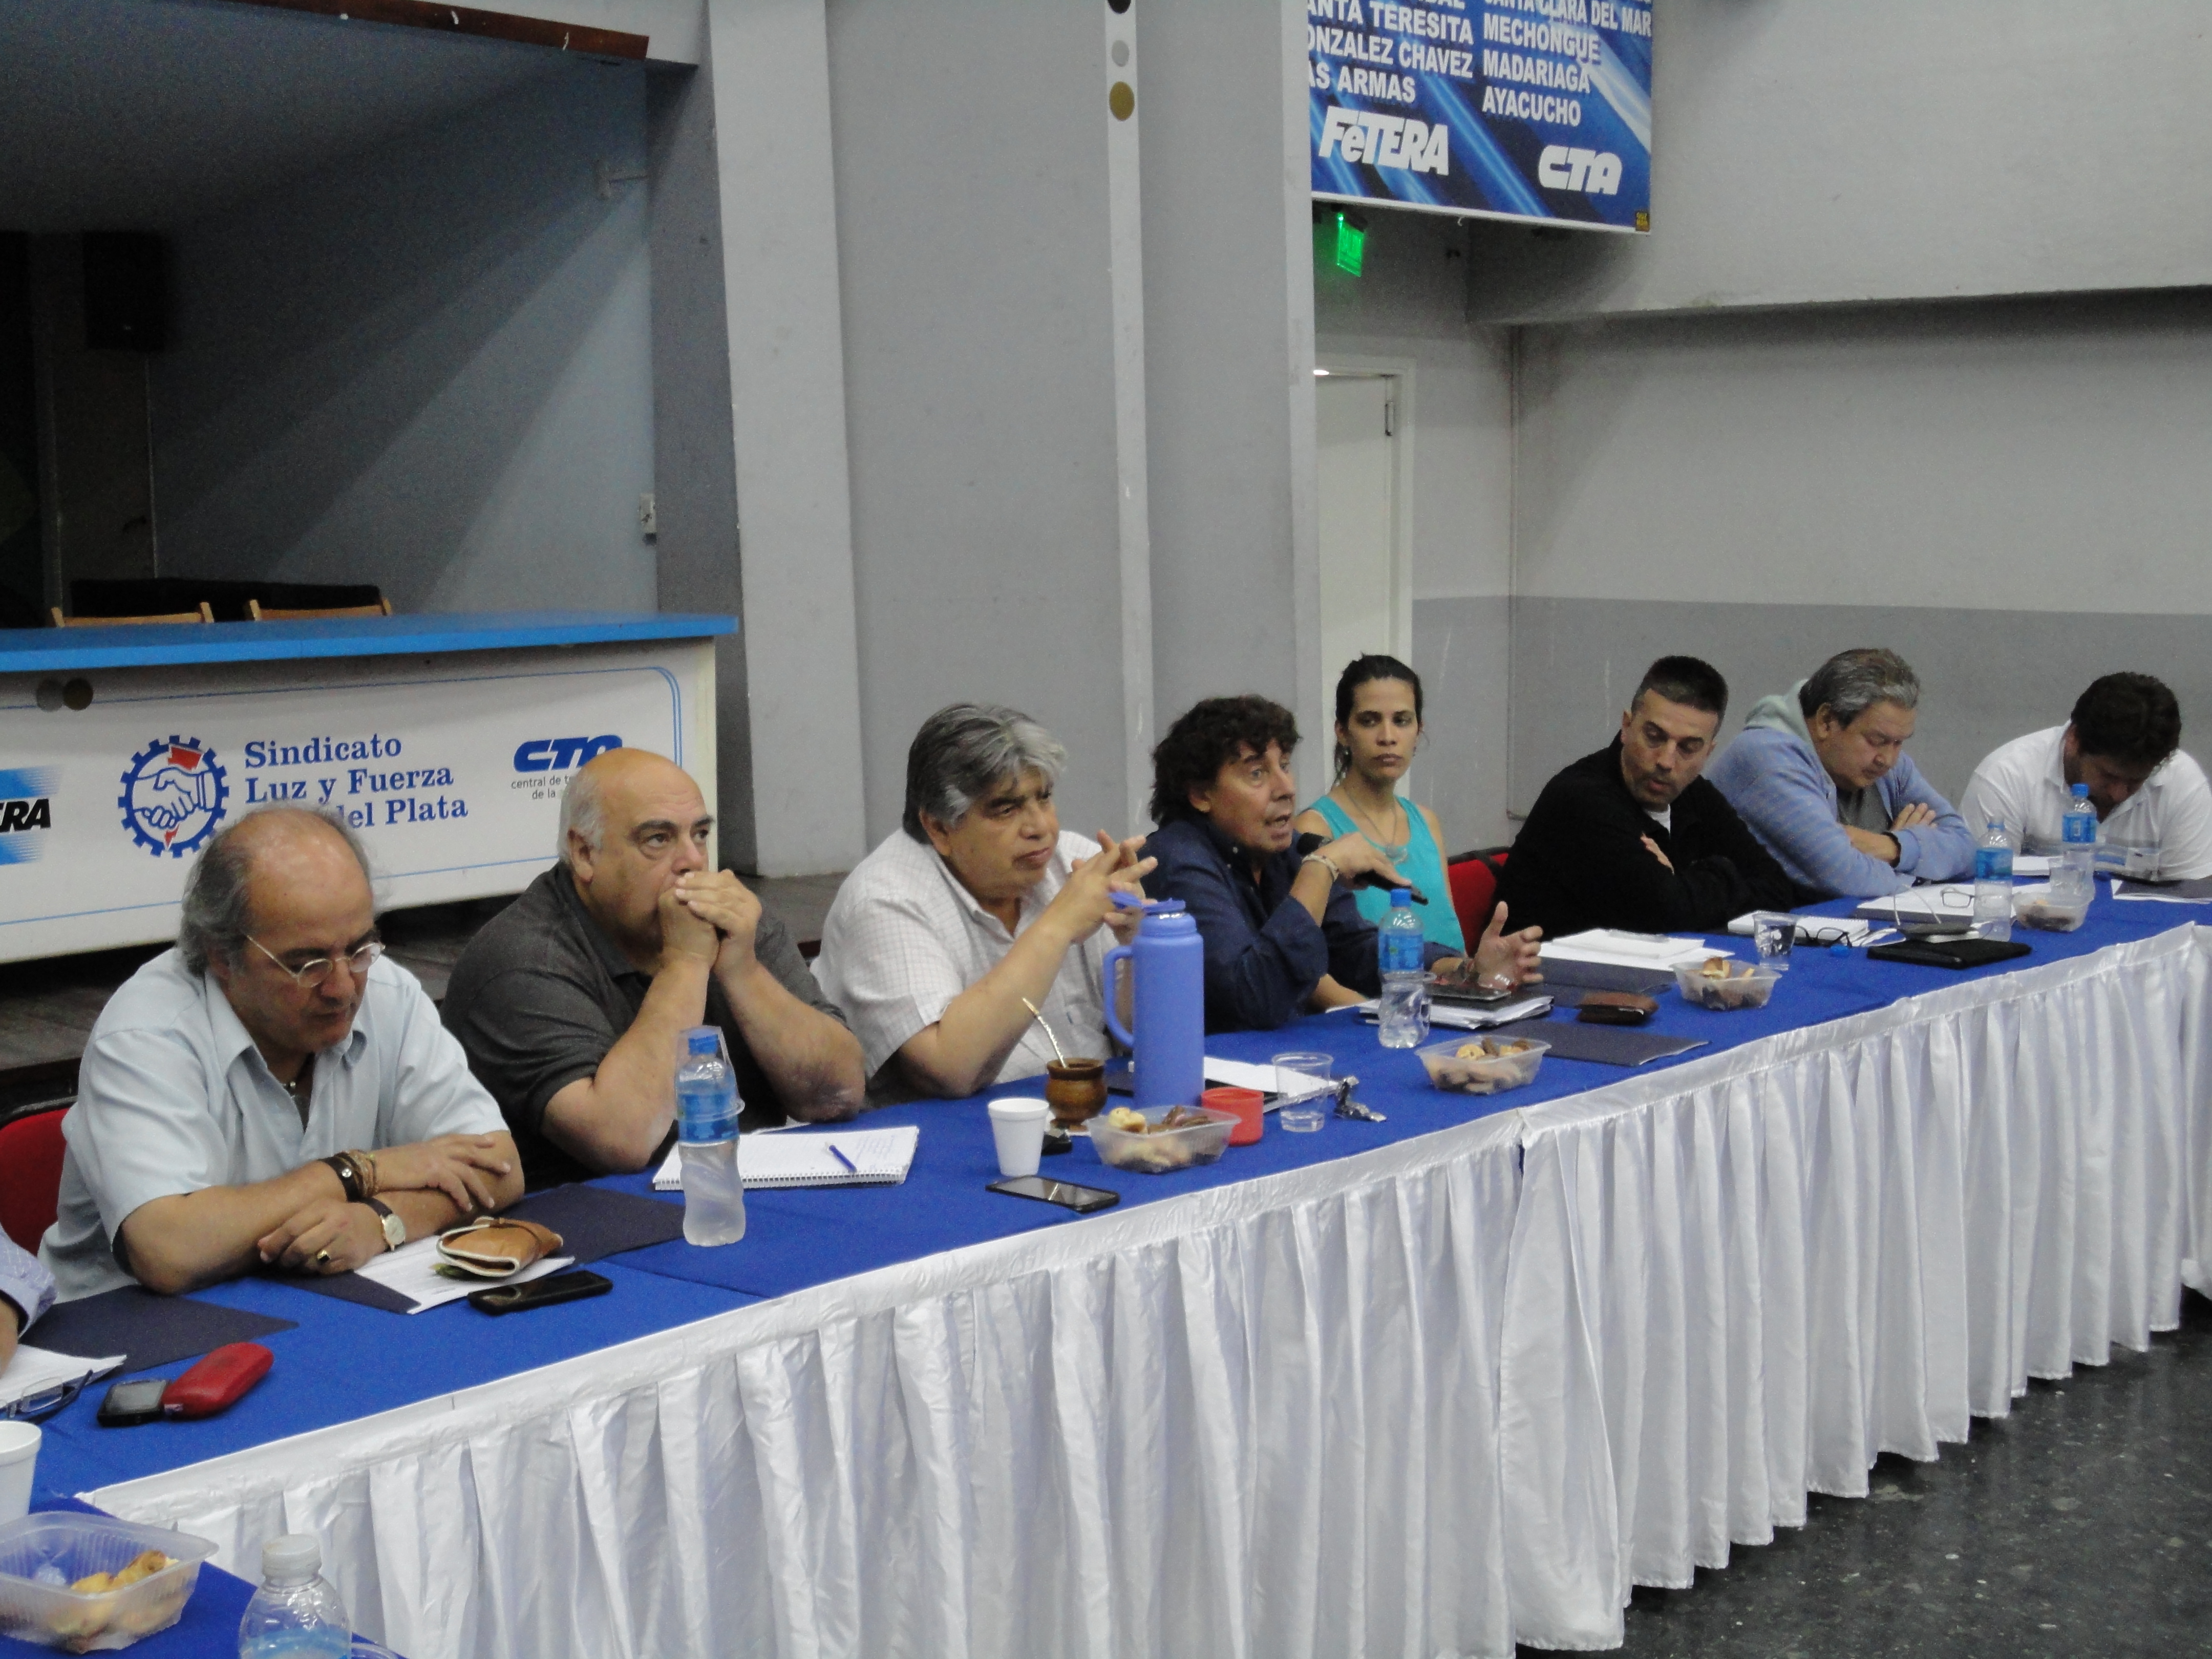 Mar del Plata: Meeting of the CTA-A’s National Board